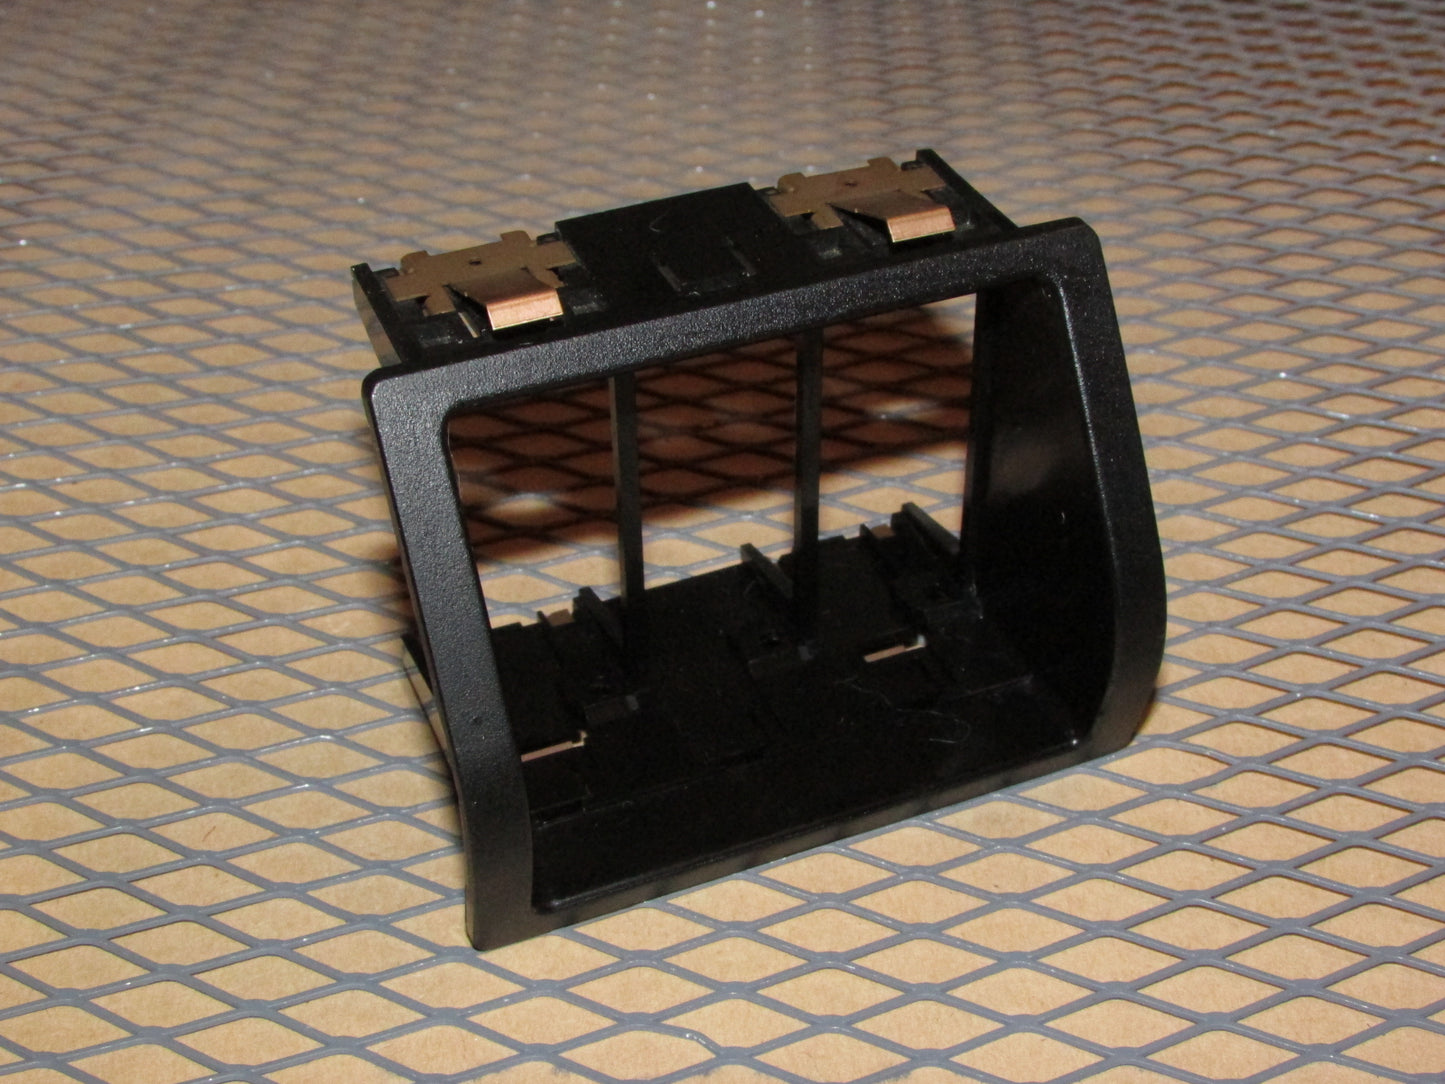 86-89 Honda Accord OEM Fog Light Dimmer Defroster Switch Holder Housing Bezel